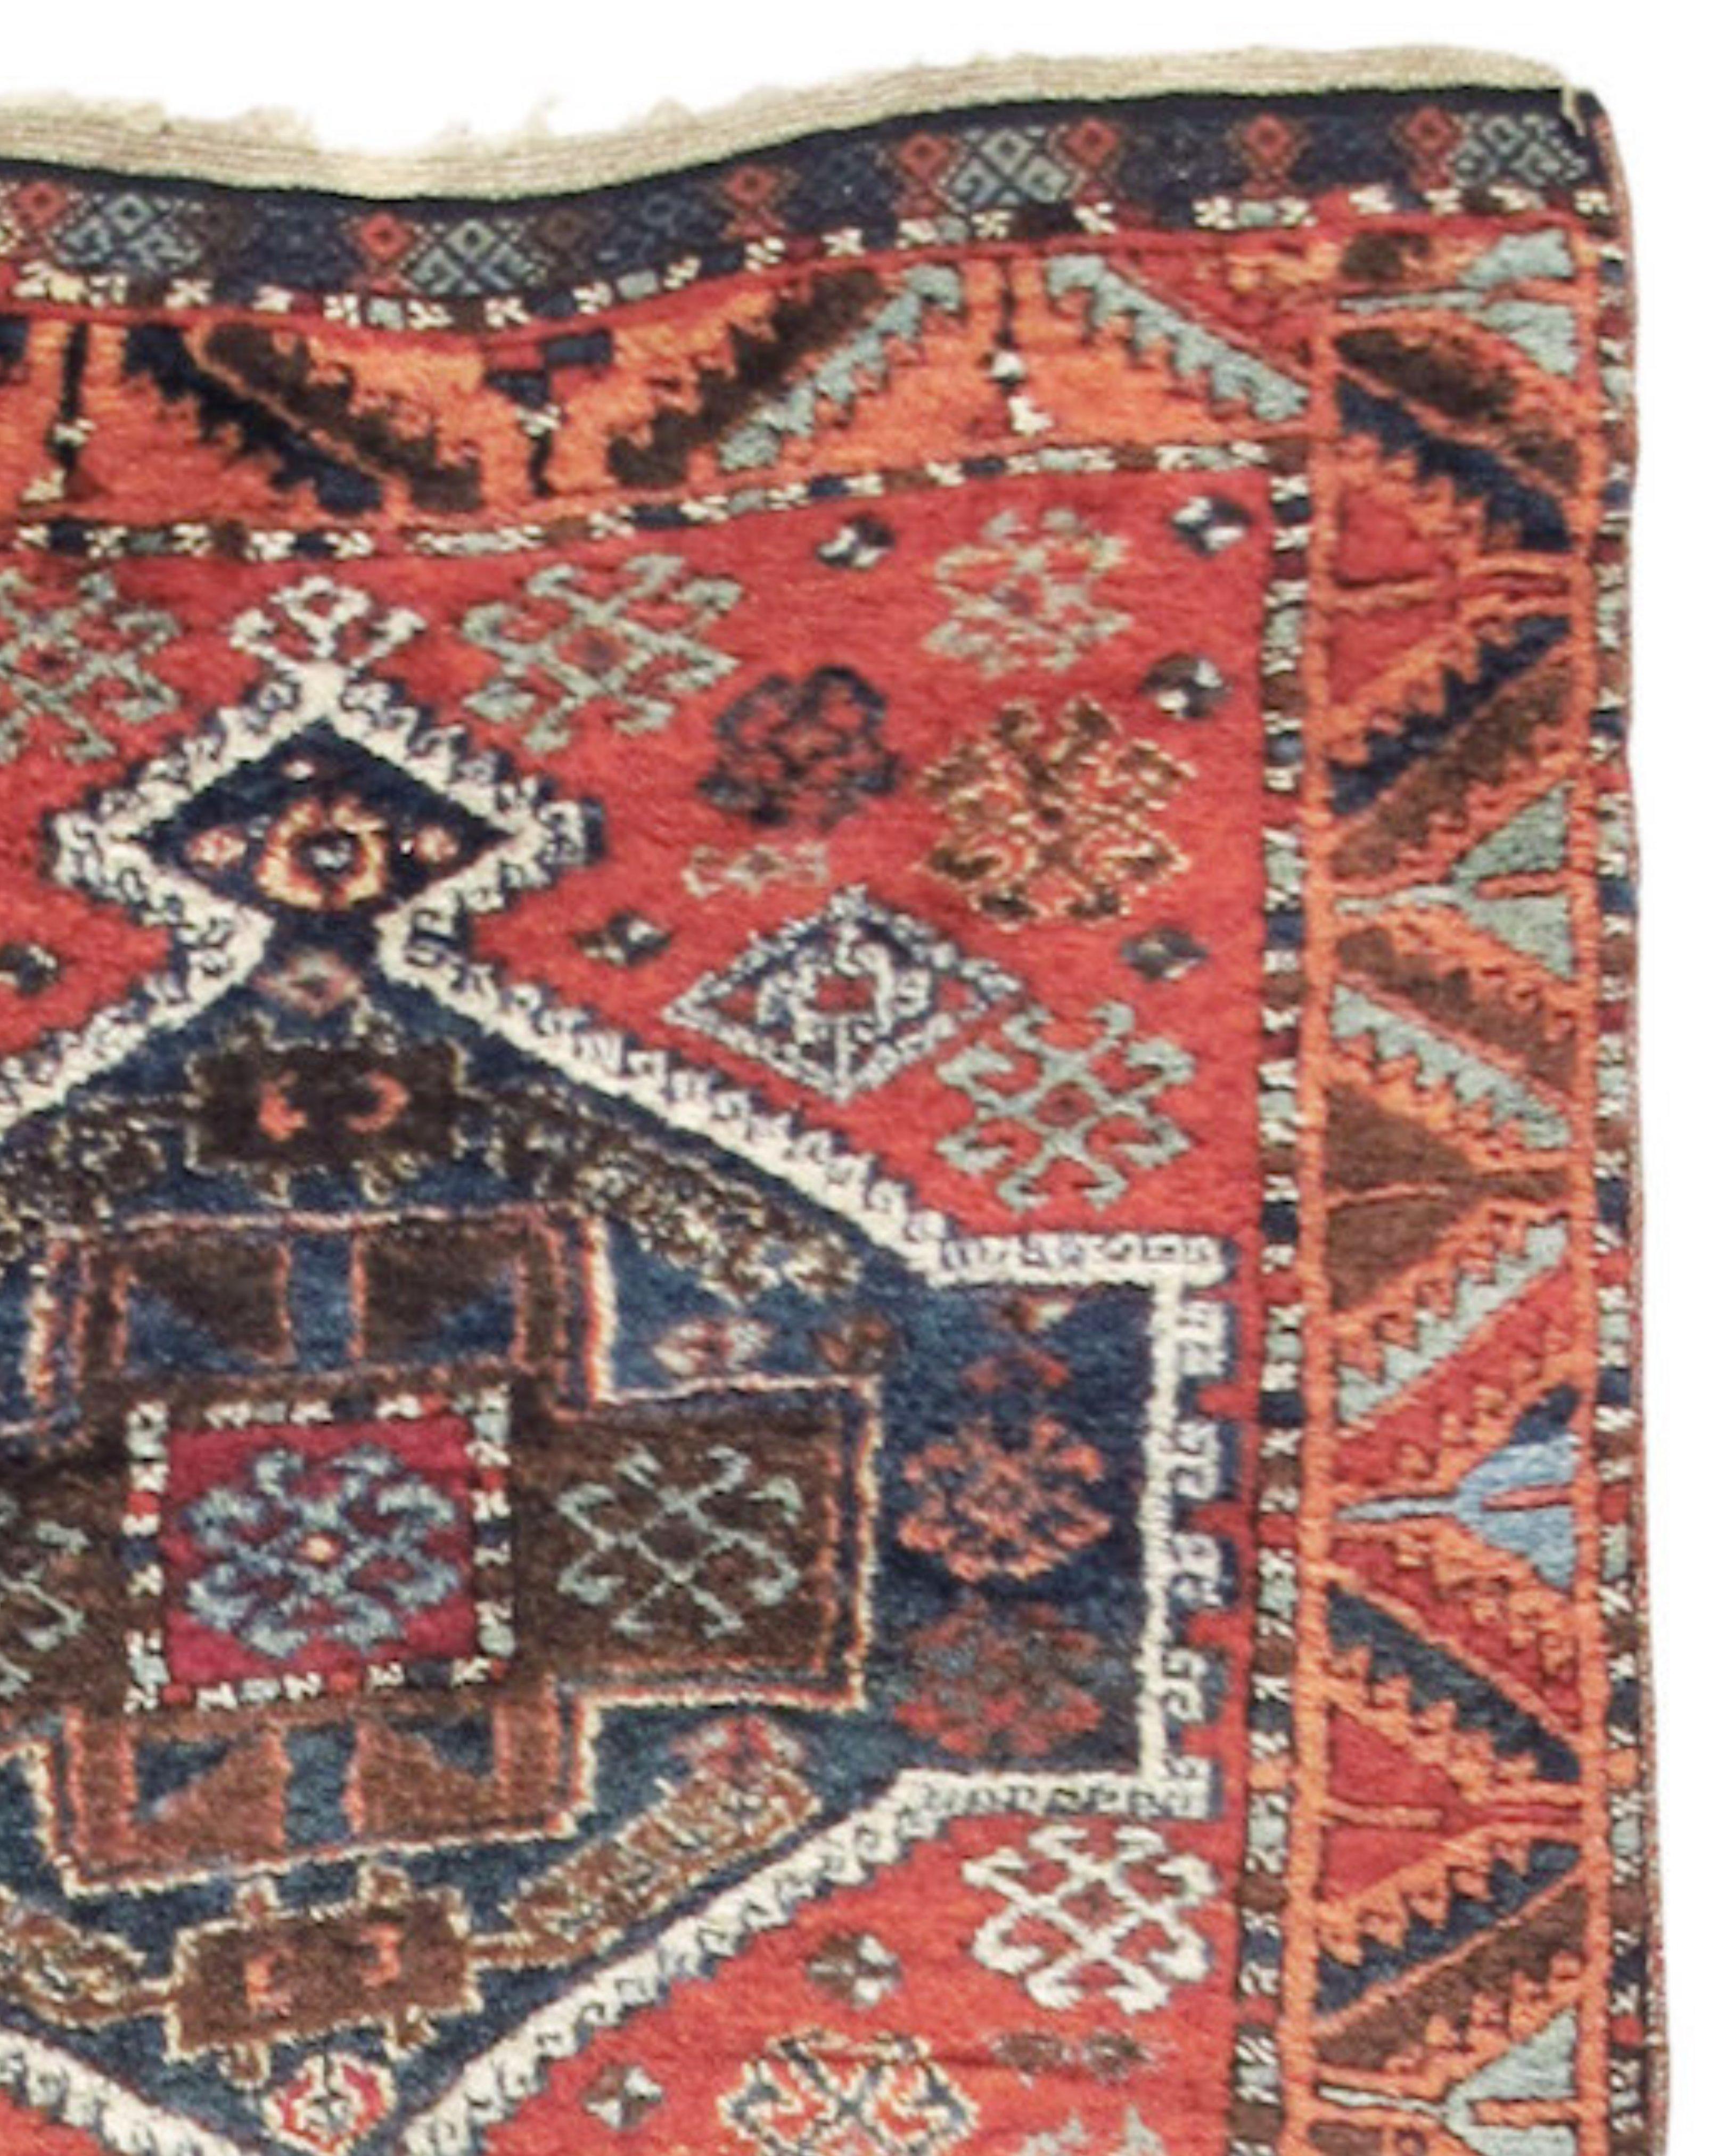 Antiker anatolischer Yuruk-Teppich, Ende 19. Jahrhundert

Zusätzliche Informationen:
Abmessungen: 3'2